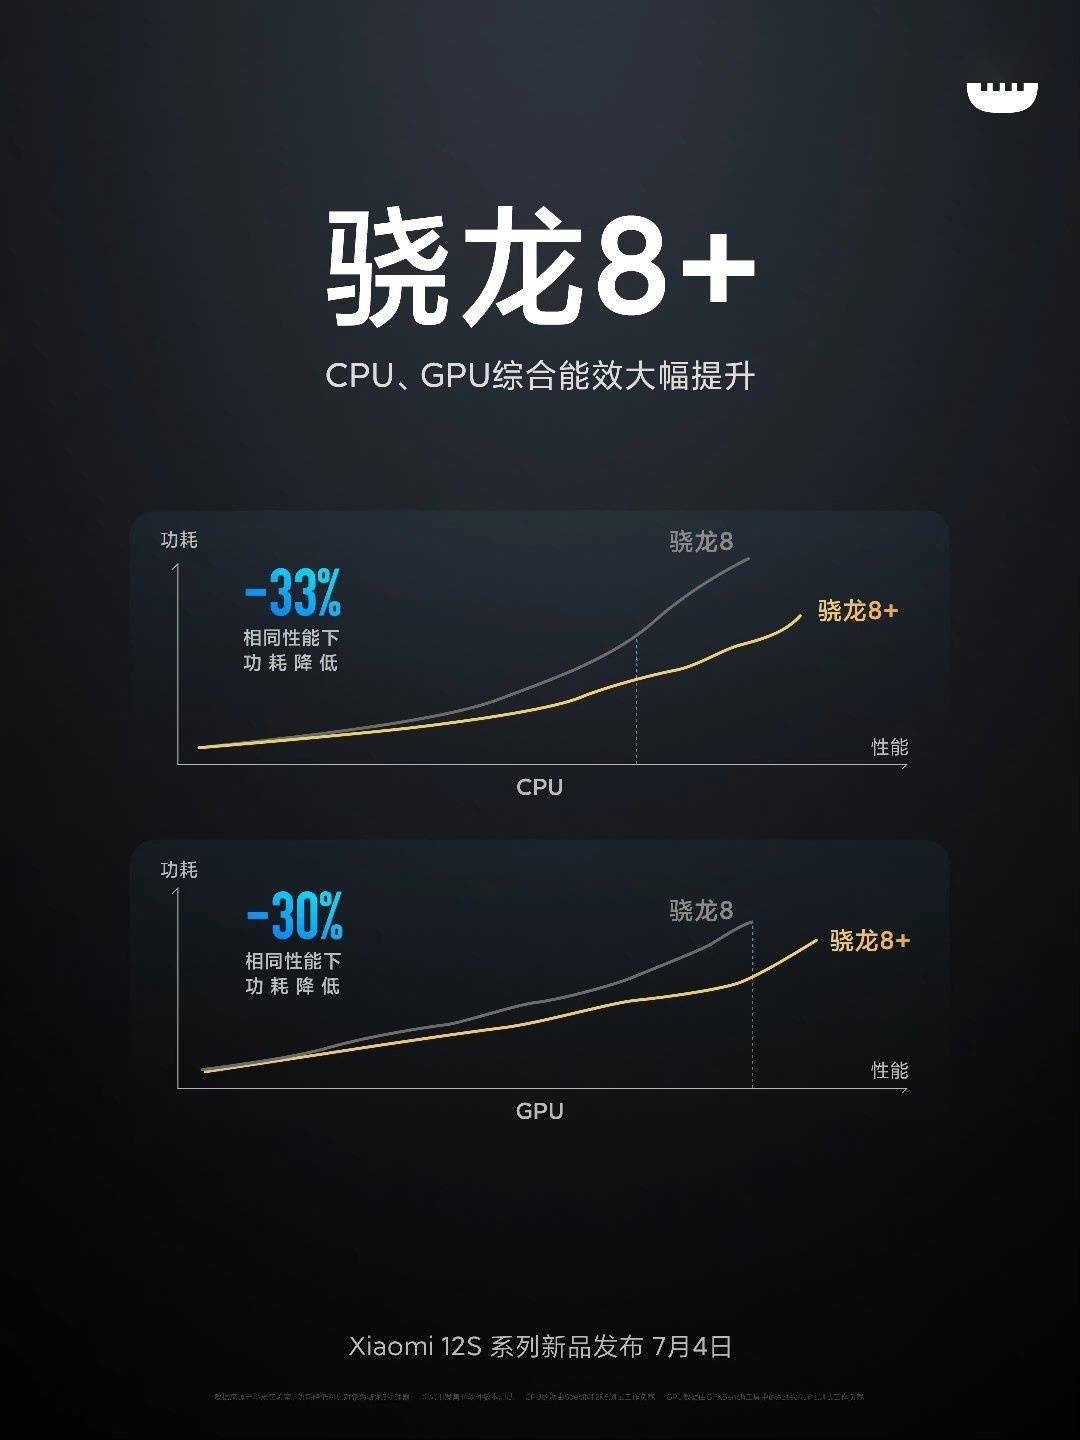 小米官方数据：高通骁龙 8+ CPU / GPU 同性能功耗降低 33%/30%